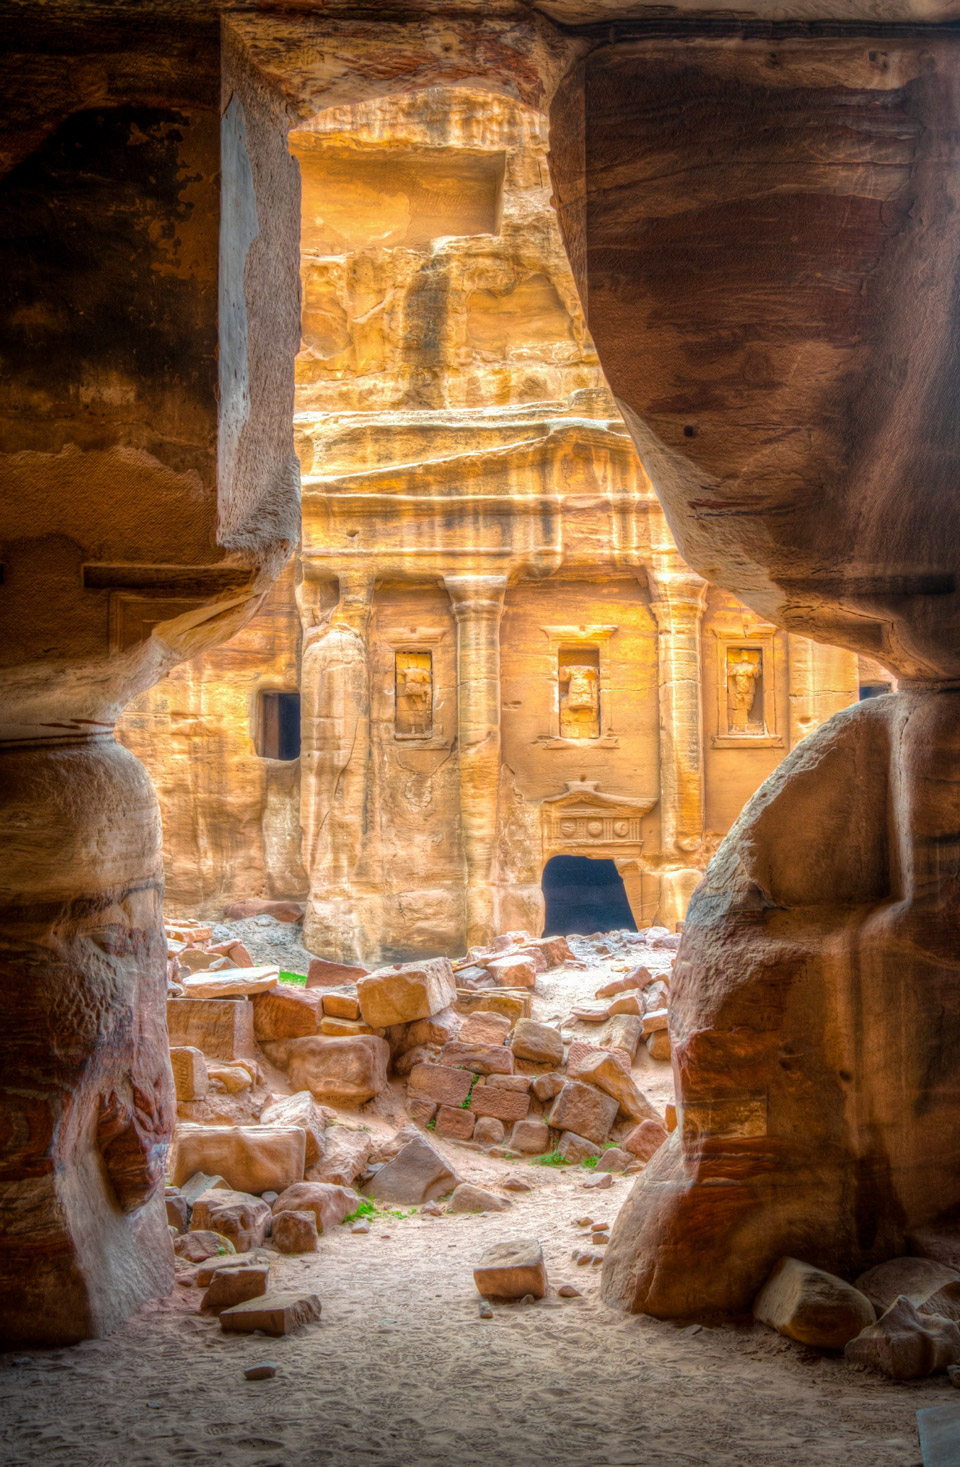 Vom Haupttal Petras aus auf der anderen Seite des Berges gesehen, befinden sich noch Hunderte von eindrucksvollen, aber wenig besuchten Gräbern und Tempeln - (Foto: ©trabantos / Getty Images)